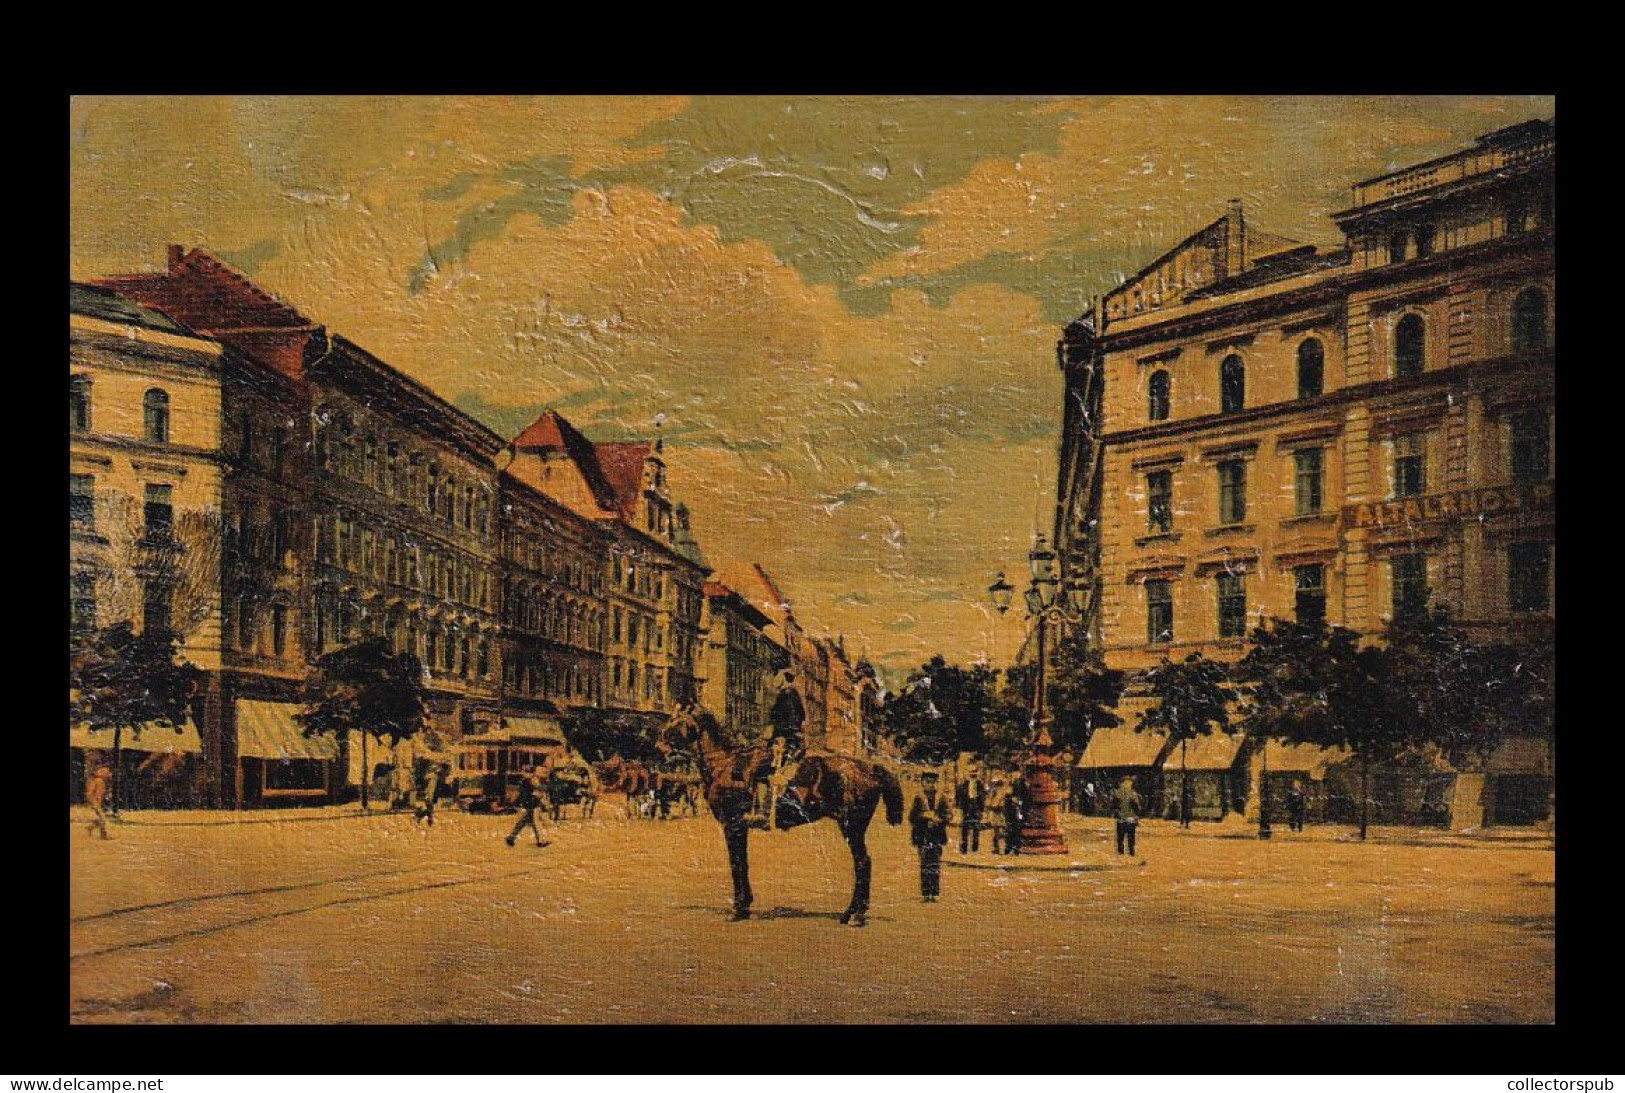 BUDAPEST 1922. Vintage Postcard - Hungary